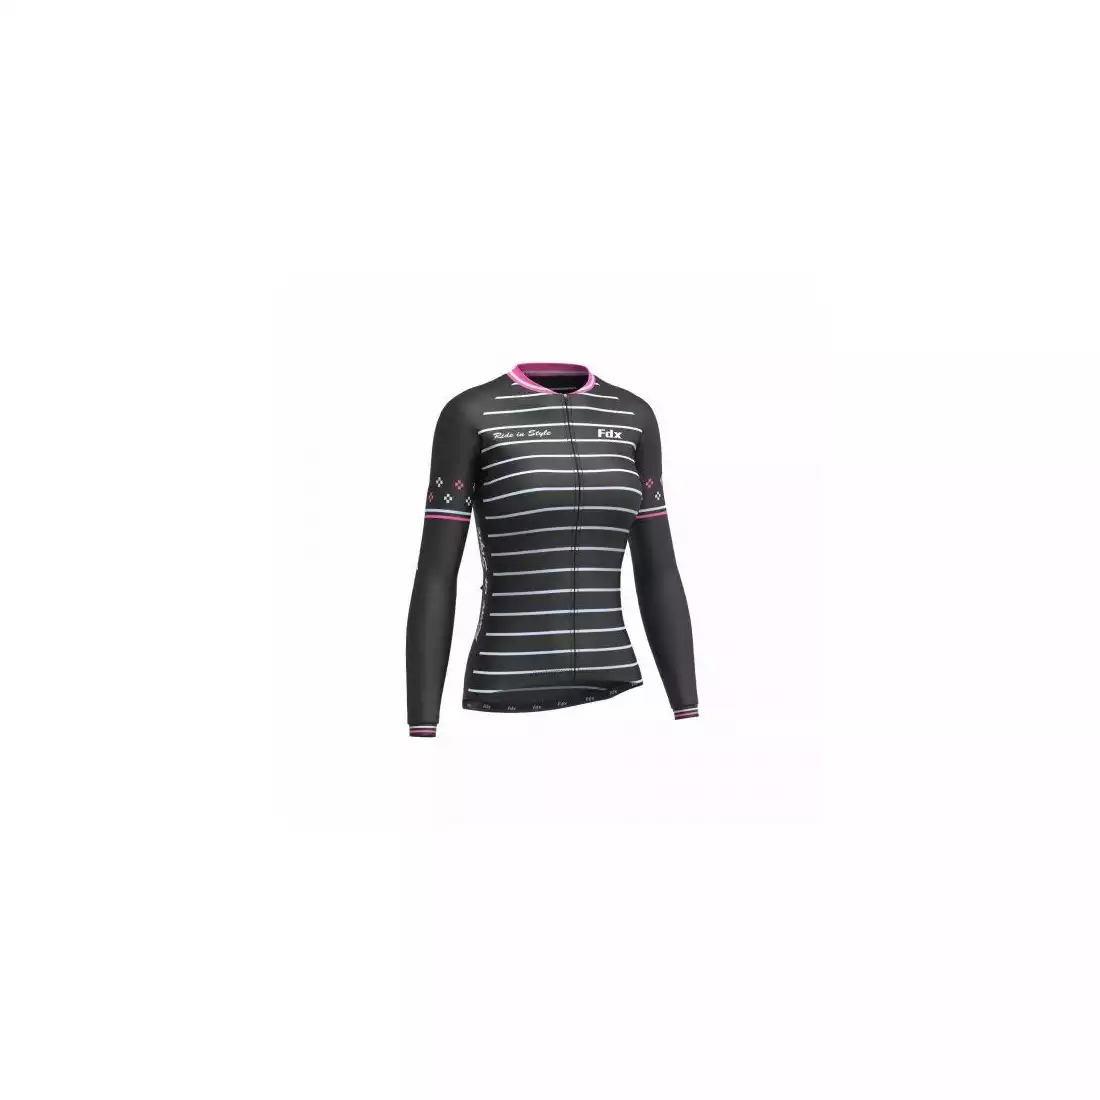 FDX 1480 damska ocieplana bluza rowerowa czarno-różowa